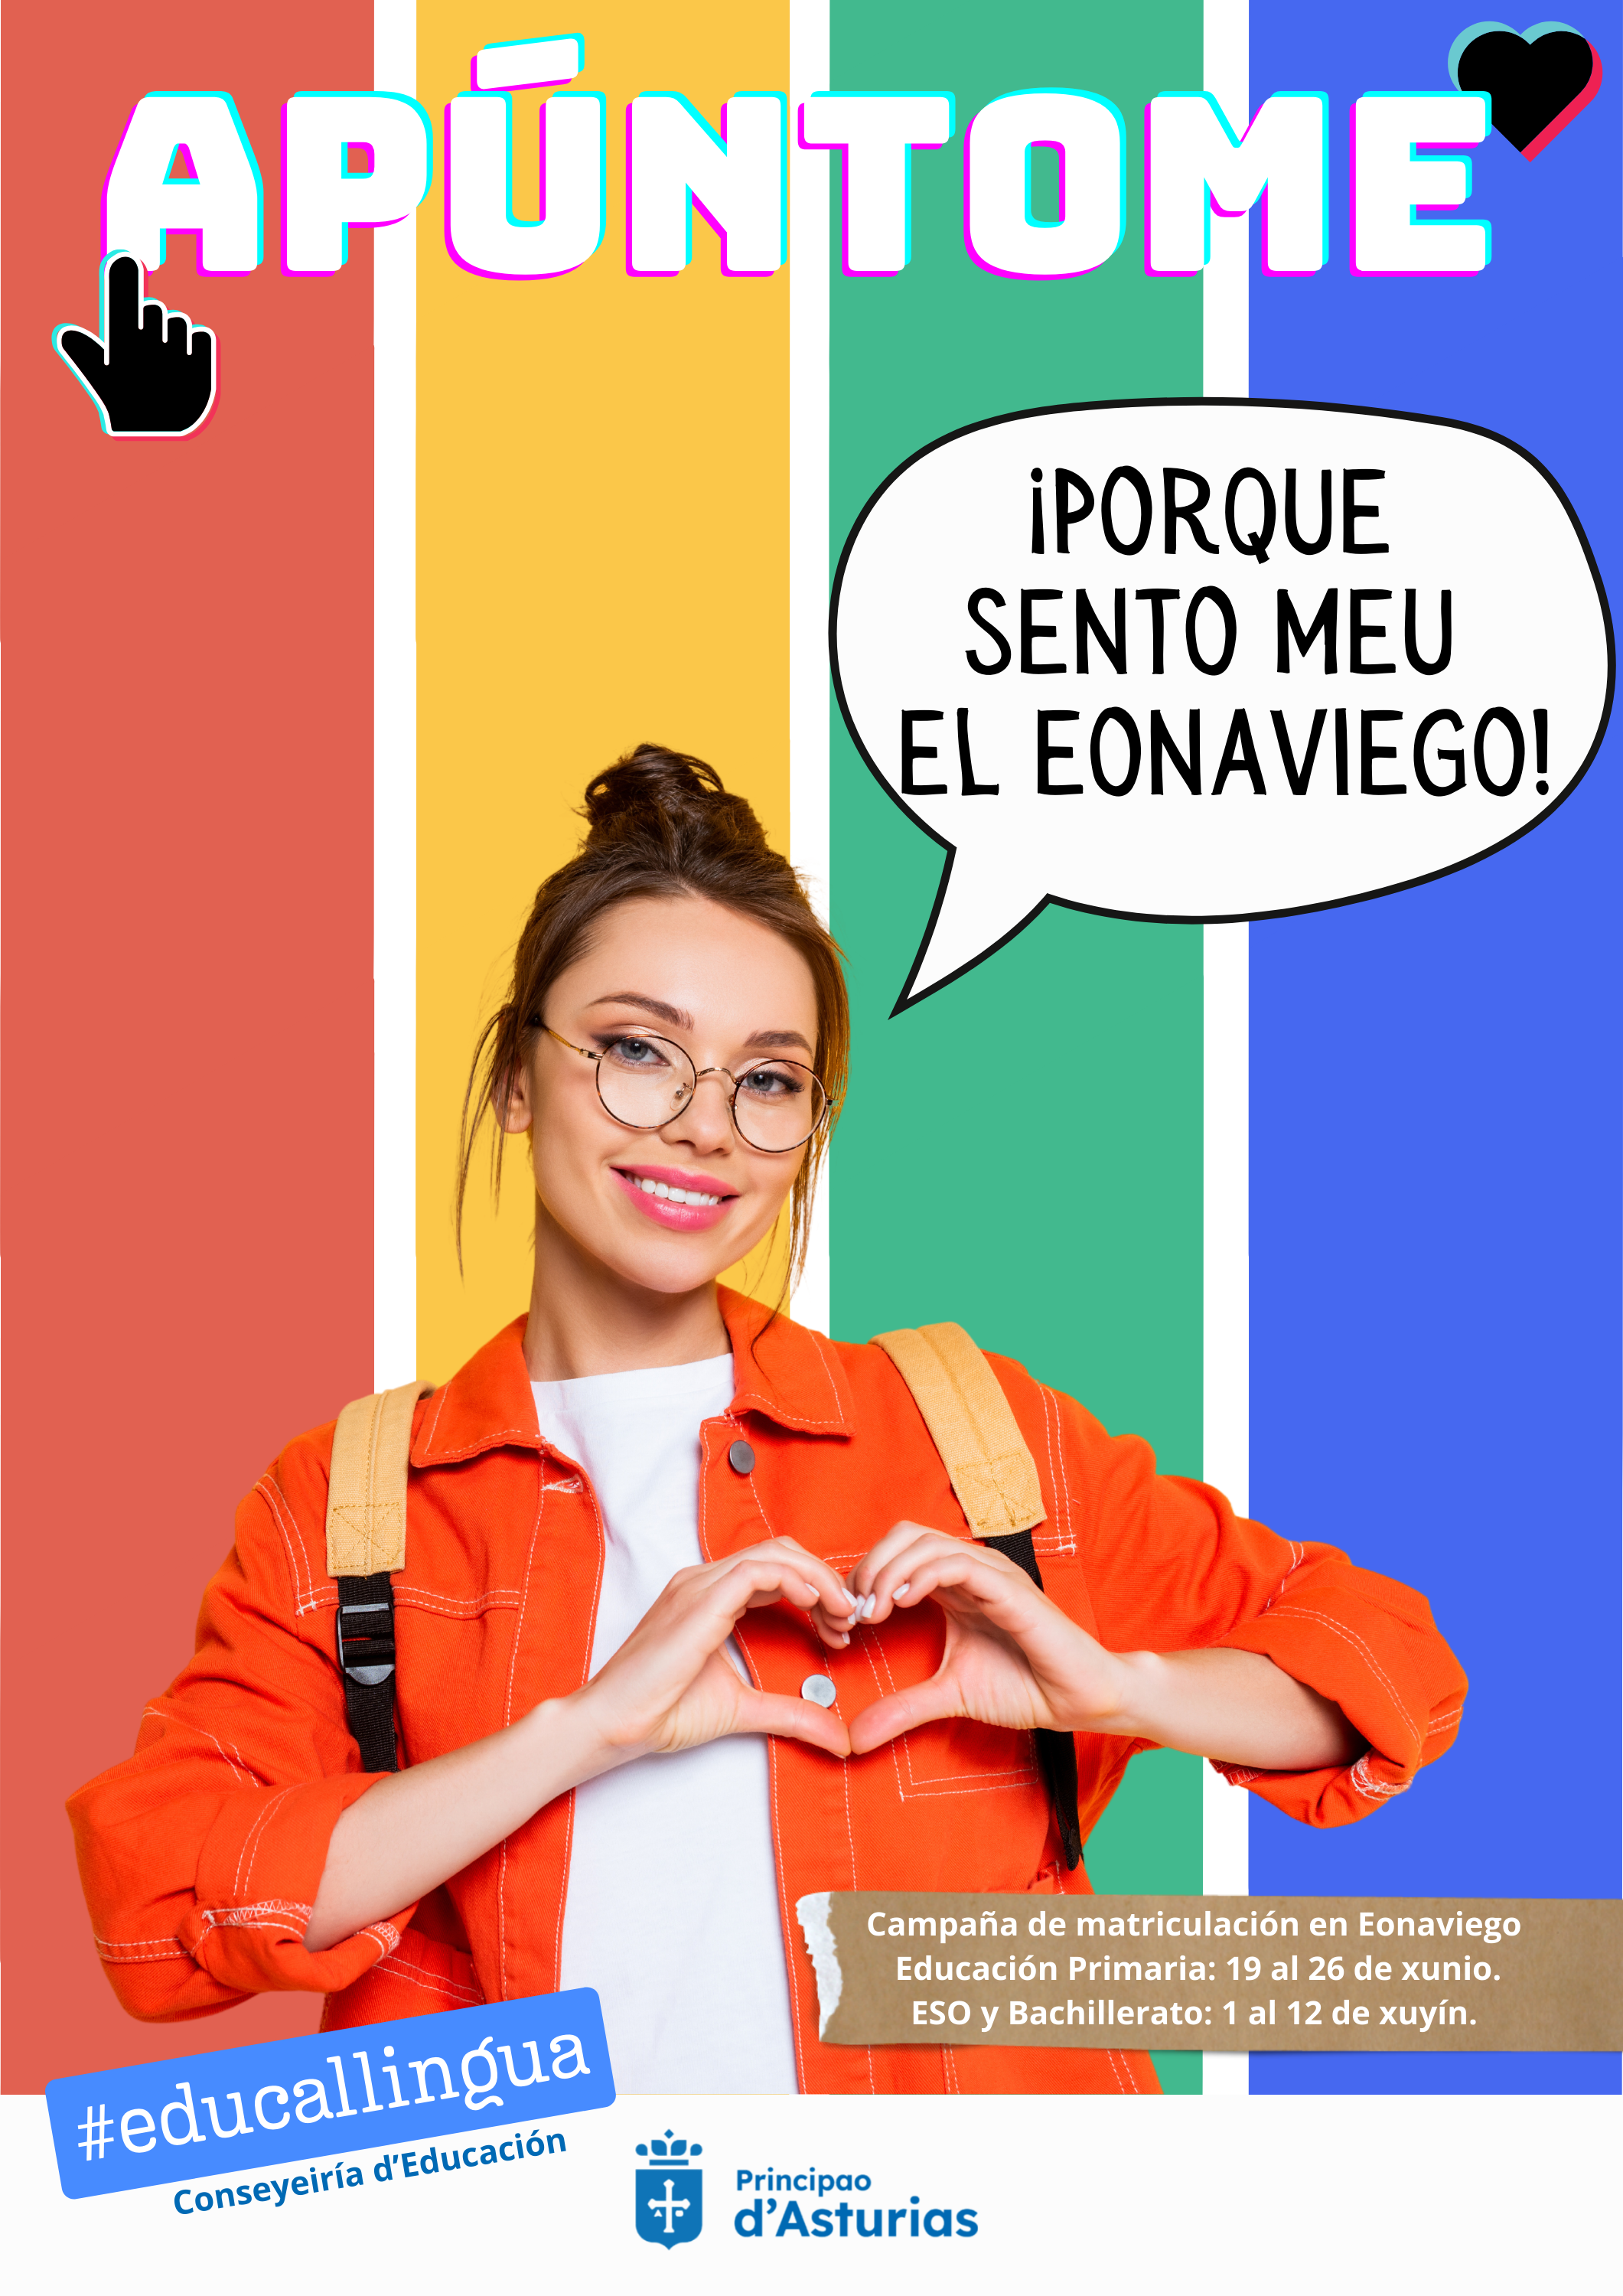 Image 1 of article Educación inicia una campaña para incentivar la matriculación de estudiantes en lengua asturiana y en eonaviego